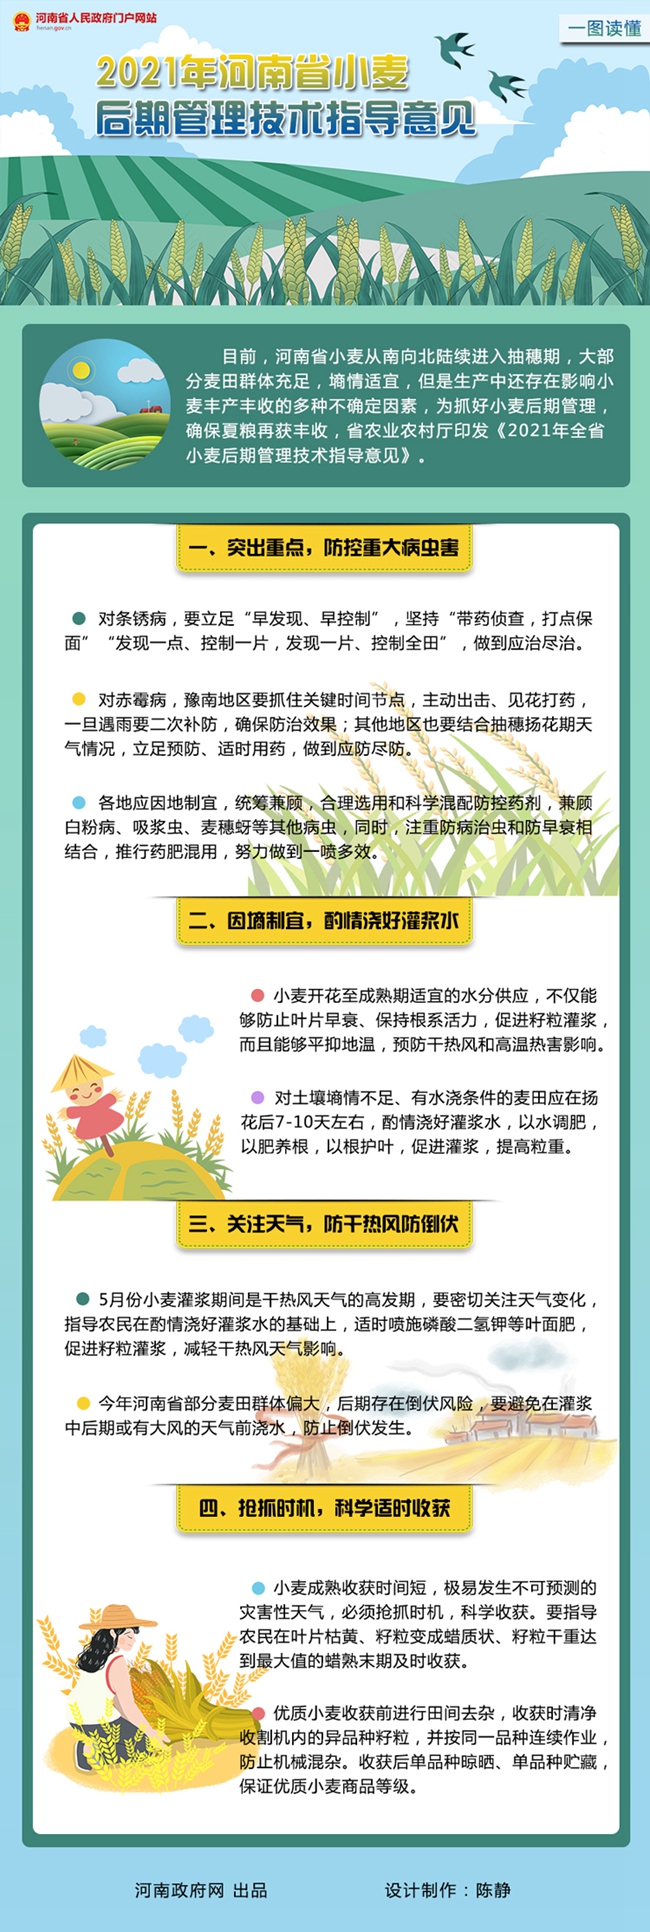 【一图读懂】2021年河南省小麦后期管理技术指导意见